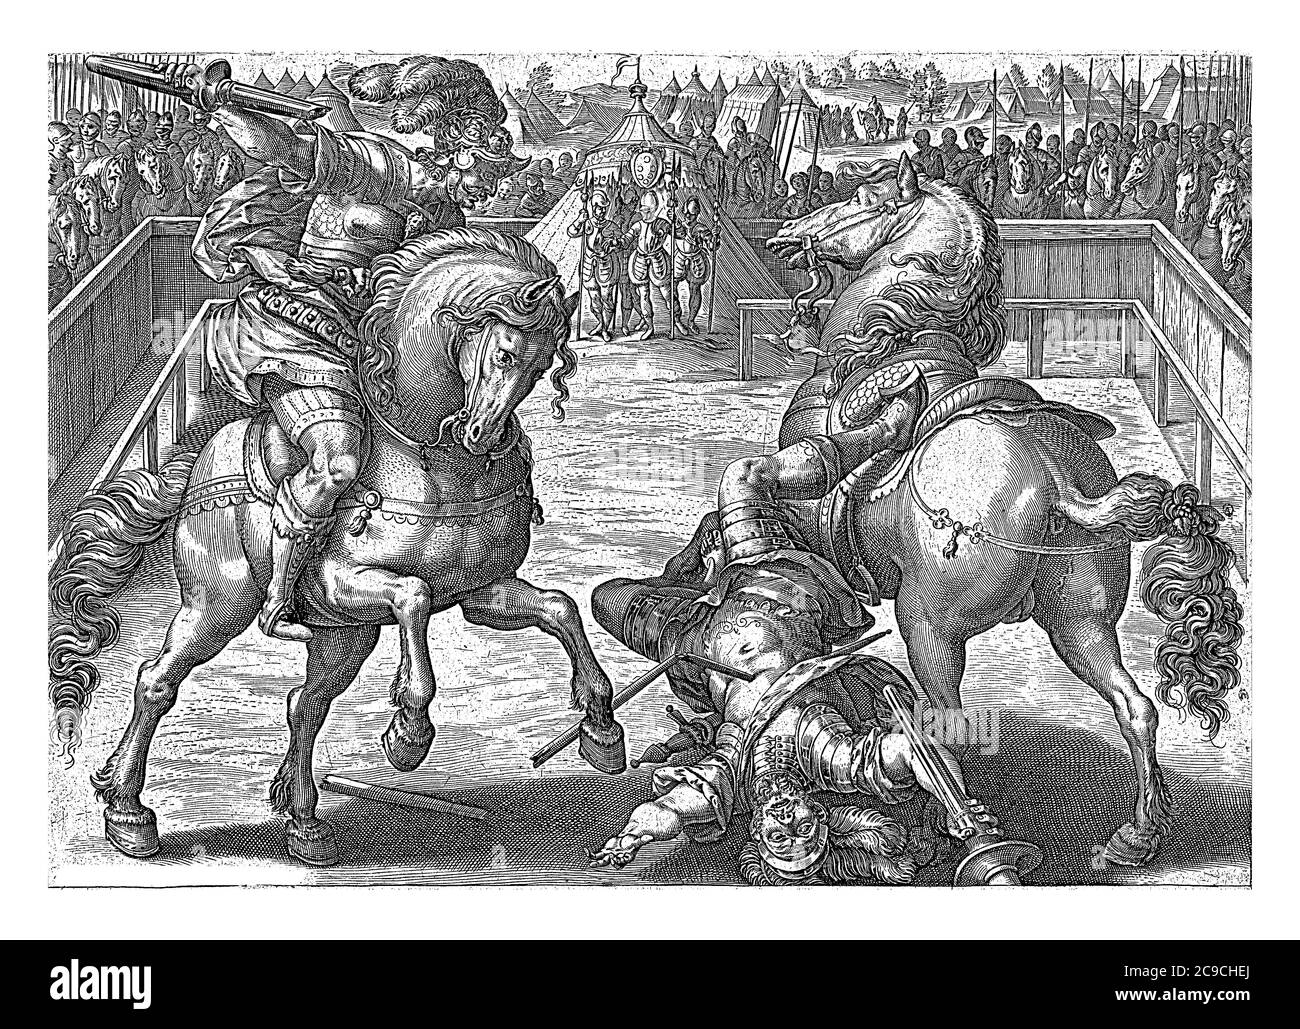 Giovanni de Medici, soprannominato 'dalle bande nere' in un duello all'interno di un'arena. Il suo avversario è fatalmente colpito dalla lancia di Giovanni dalla sua sella. Soldati Foto Stock